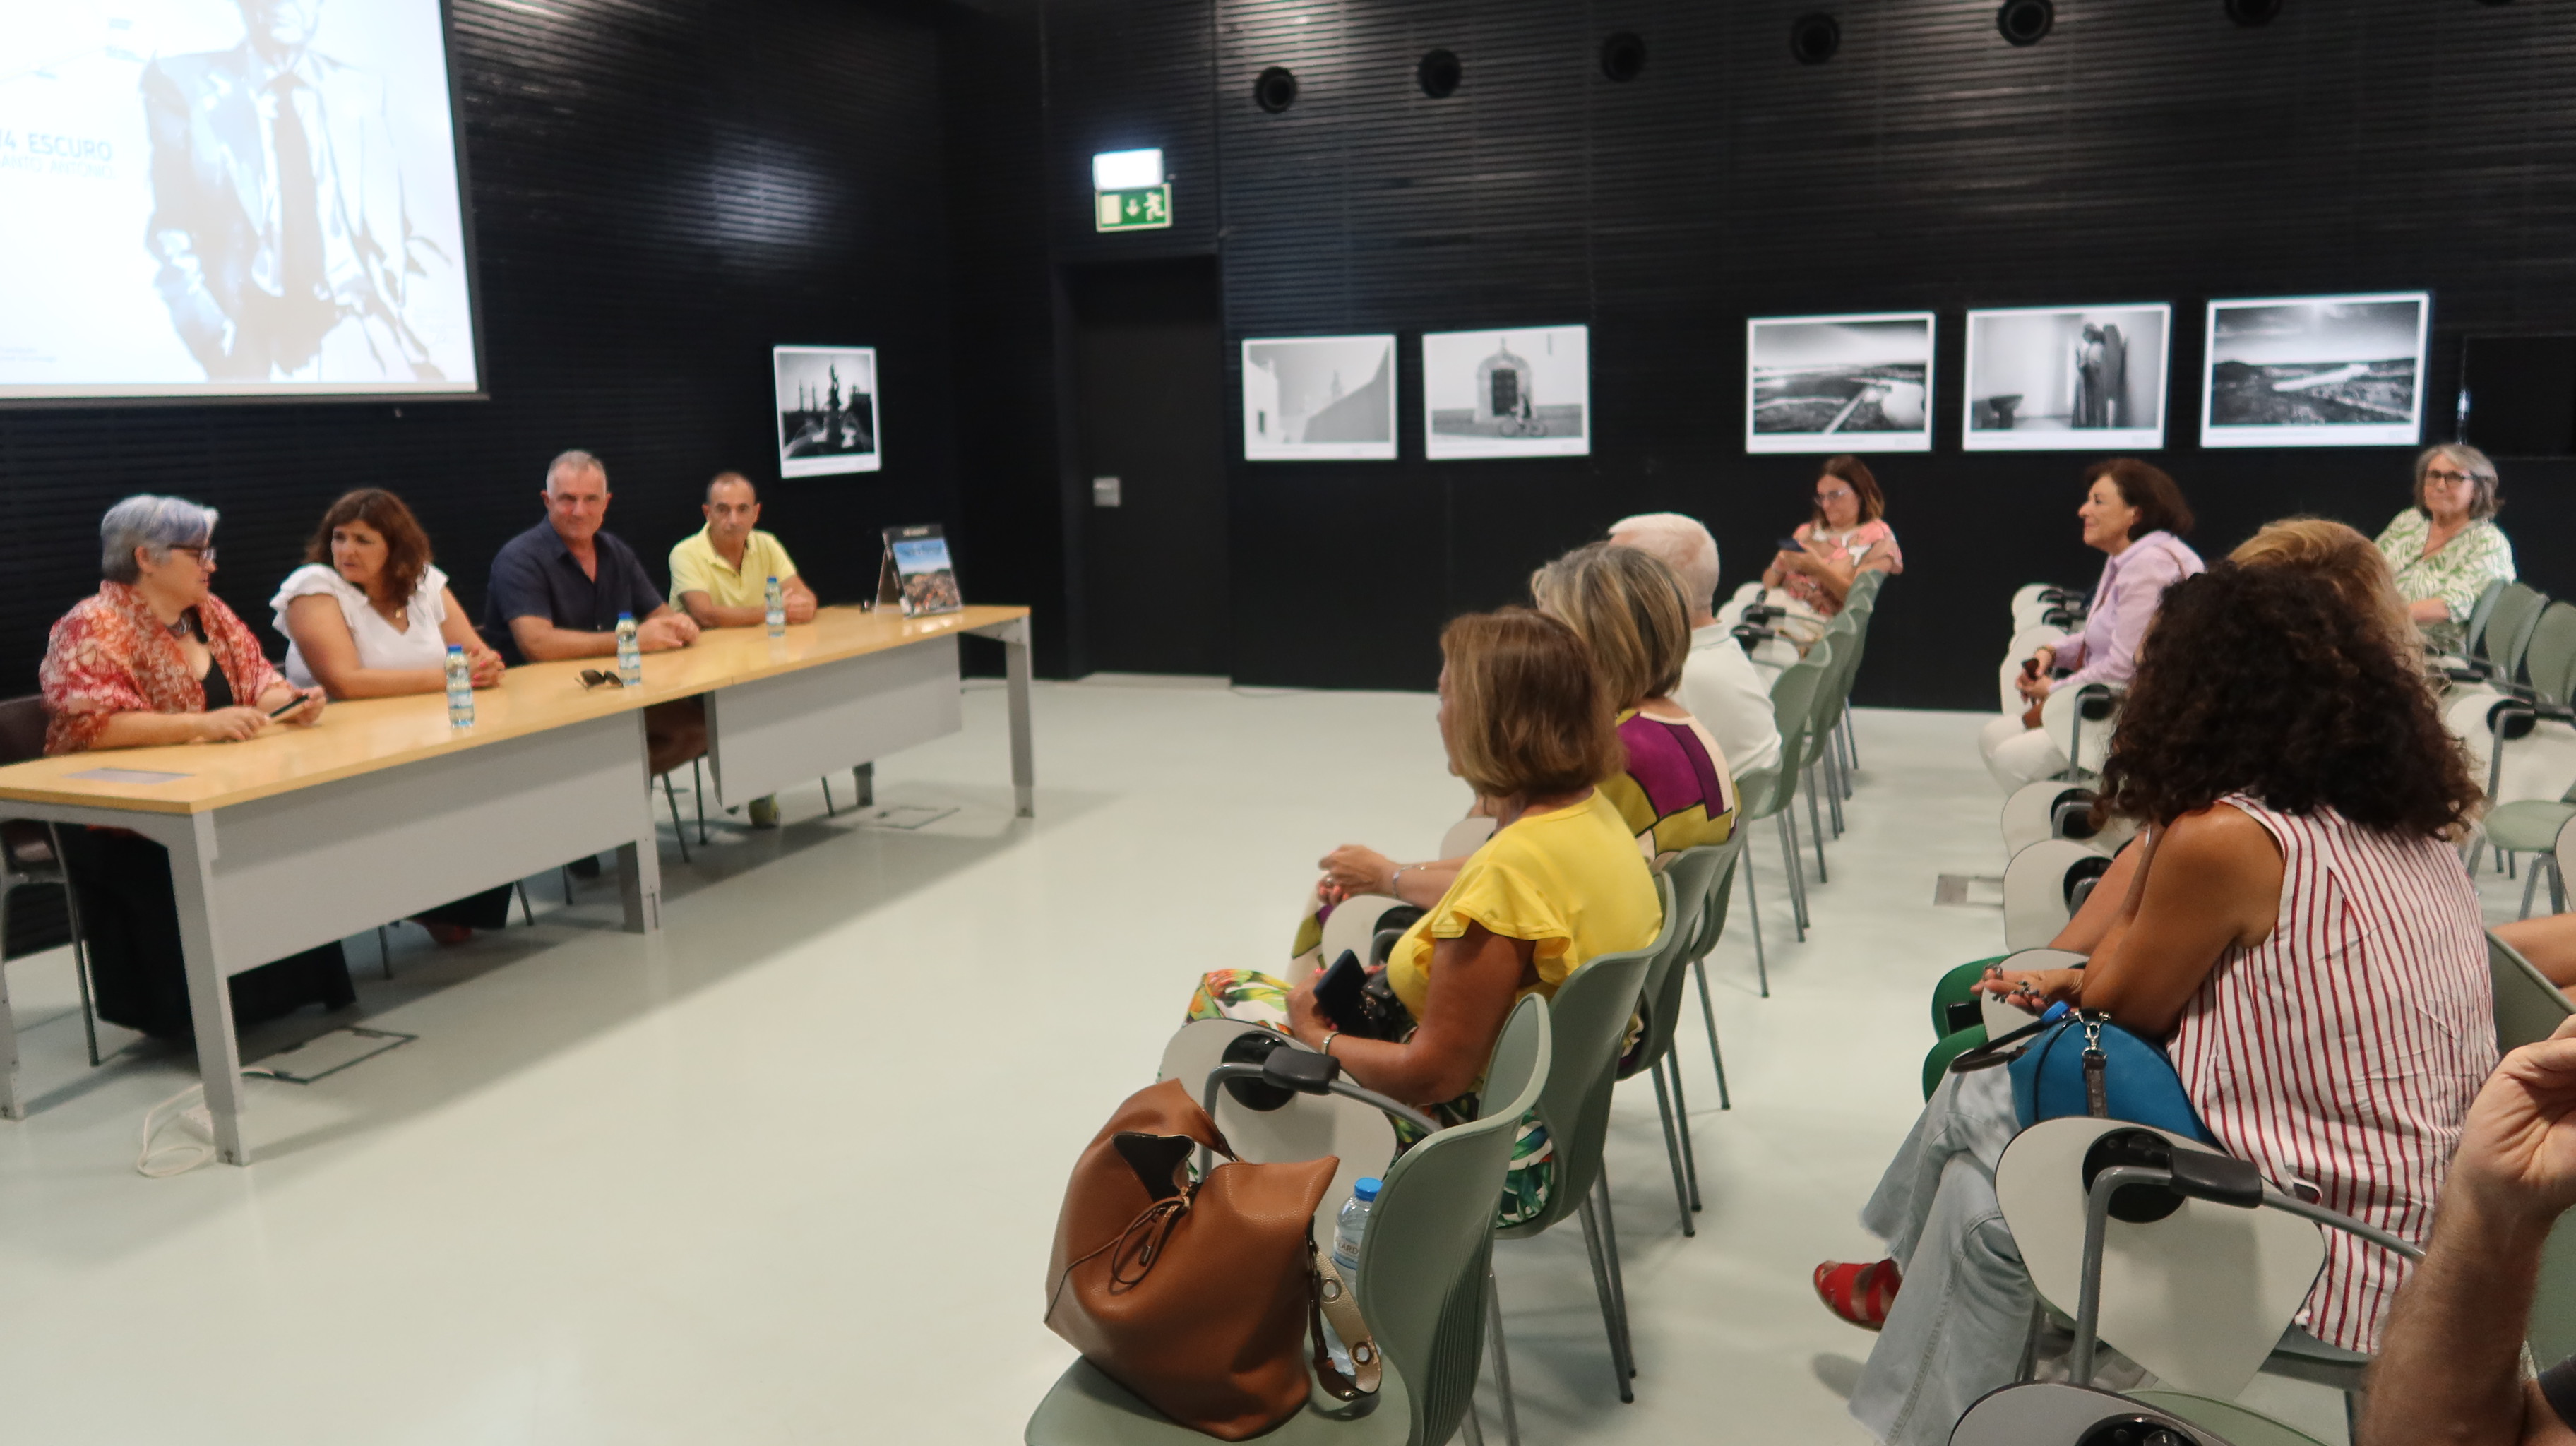 Exposição "Viagem fotográfica ao Algarve" em Tavira até 31 julho